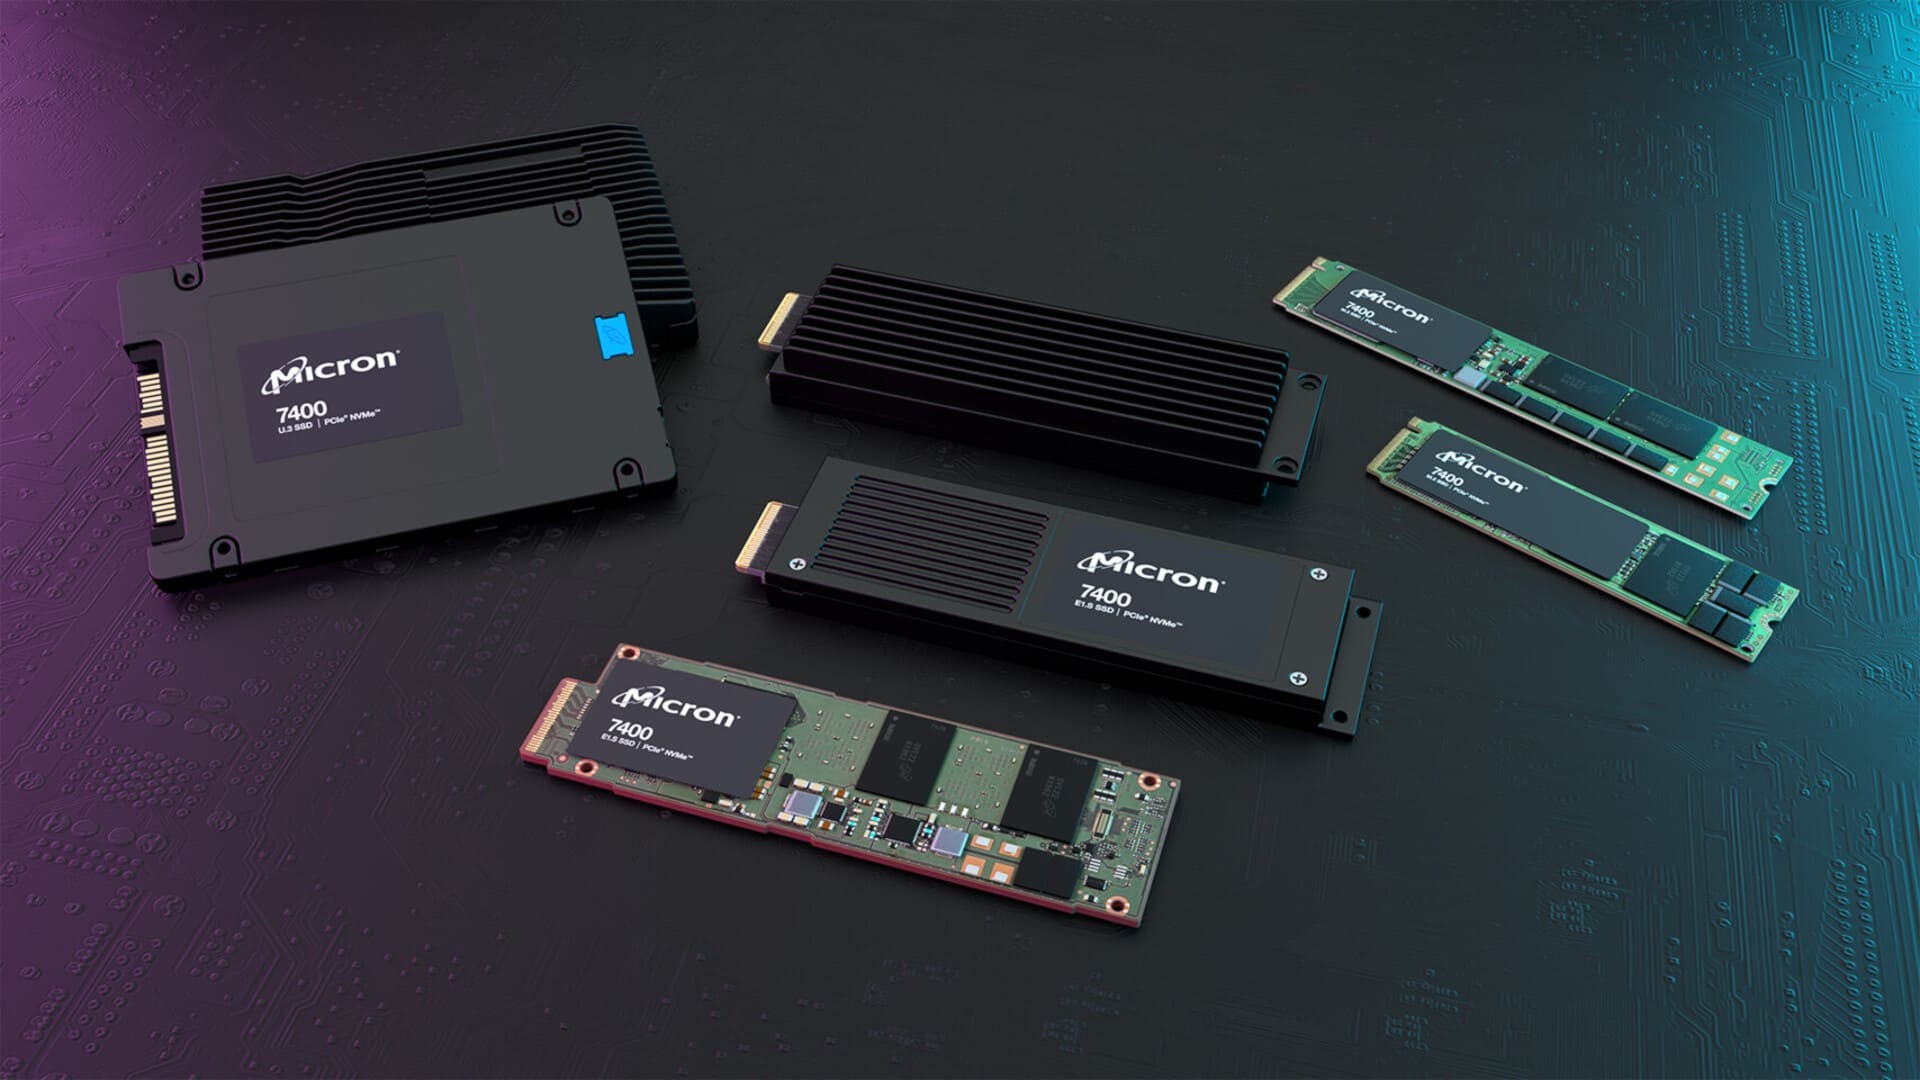 وحدات التخزين Micron 7400 SSD